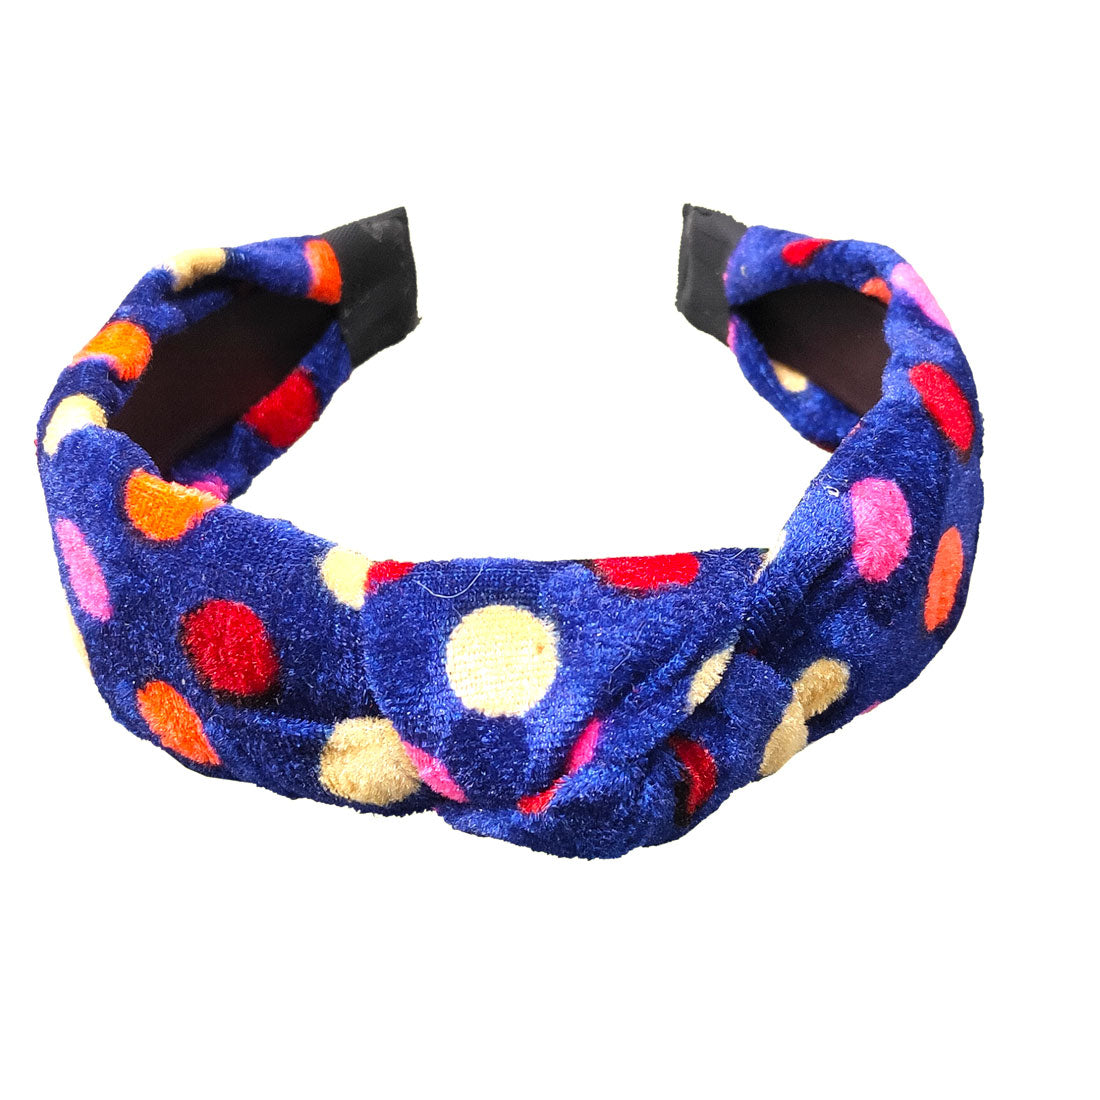 Anokhi Ada Handmade Violet Polka Dots Design Velvet Knot Hairband/Headband for Girls and Women -14-17H